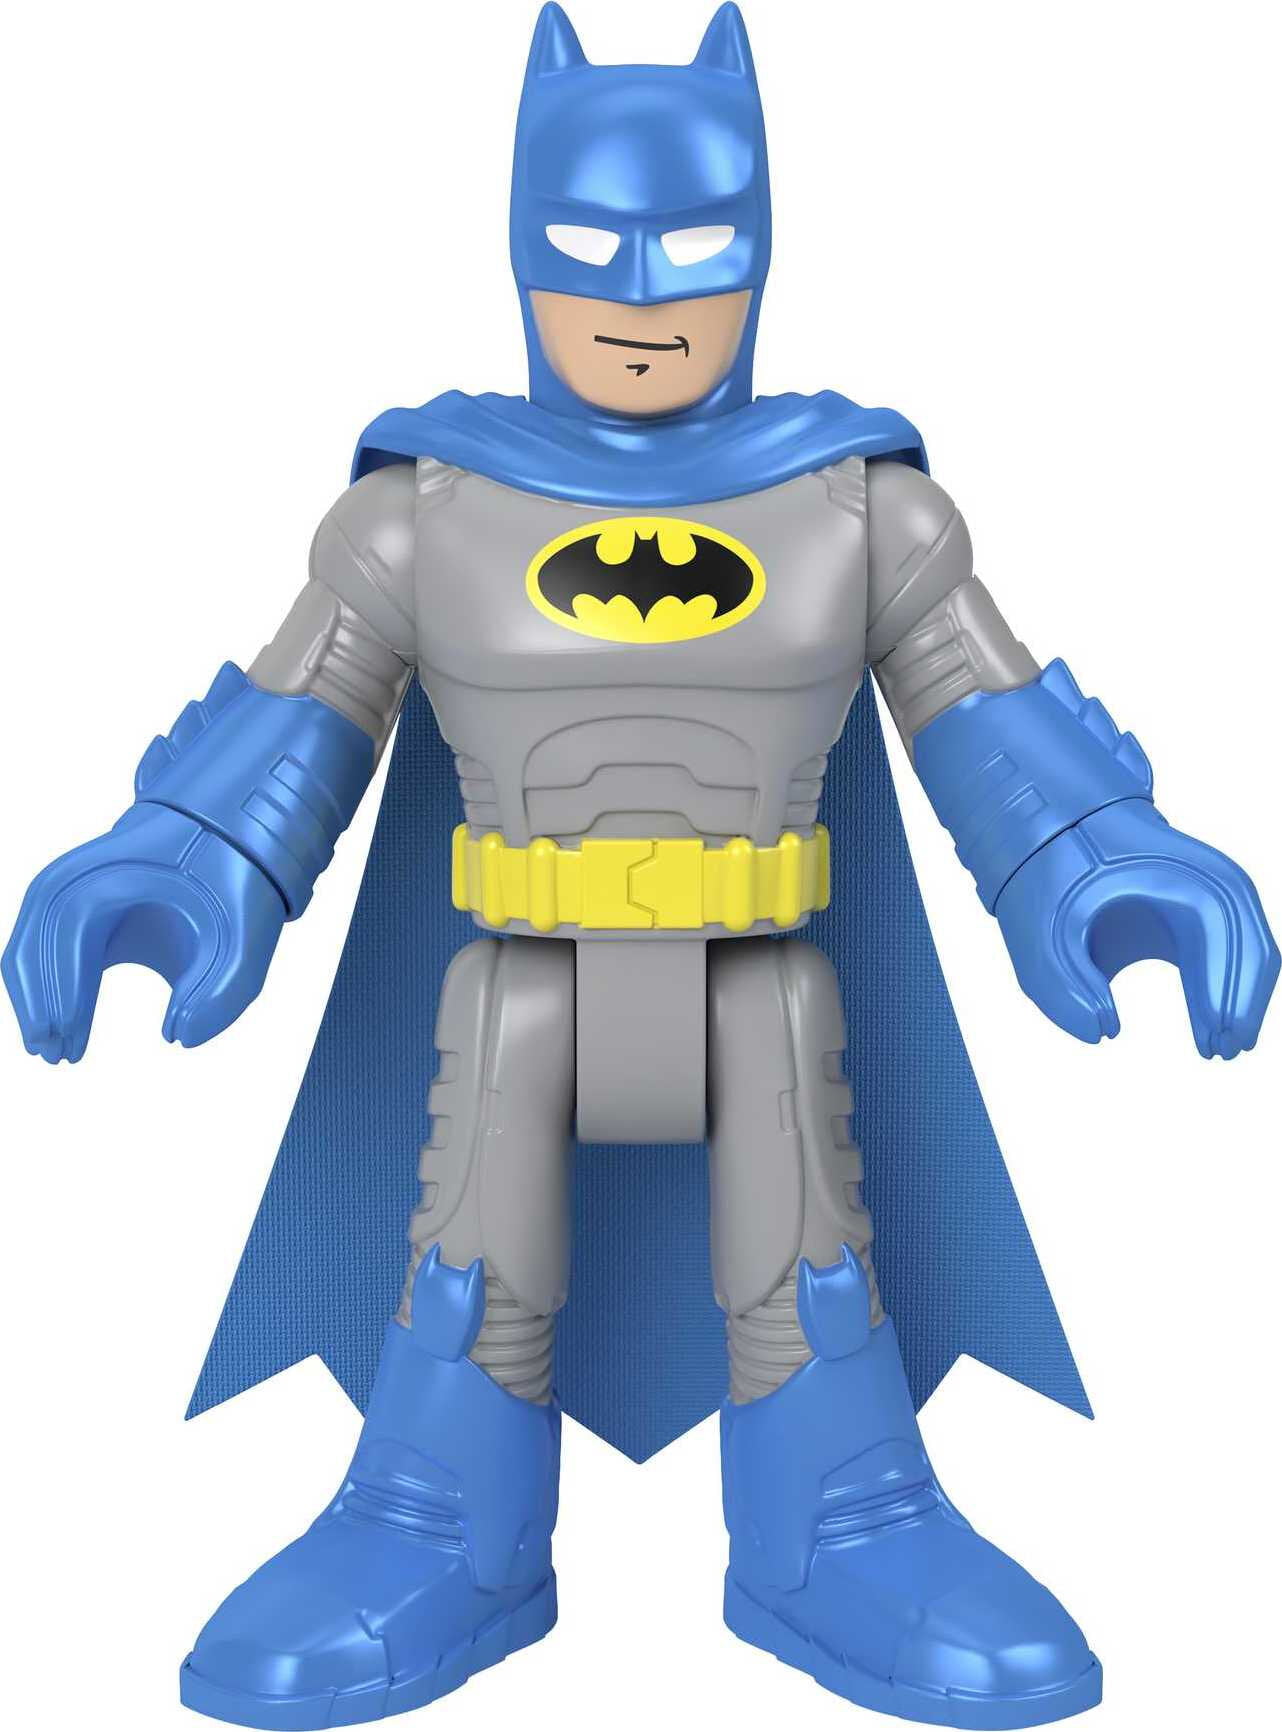 Fisher-Price Imaginext DC Super Friends batman 2.5" Figure DC Comics 10 styles 